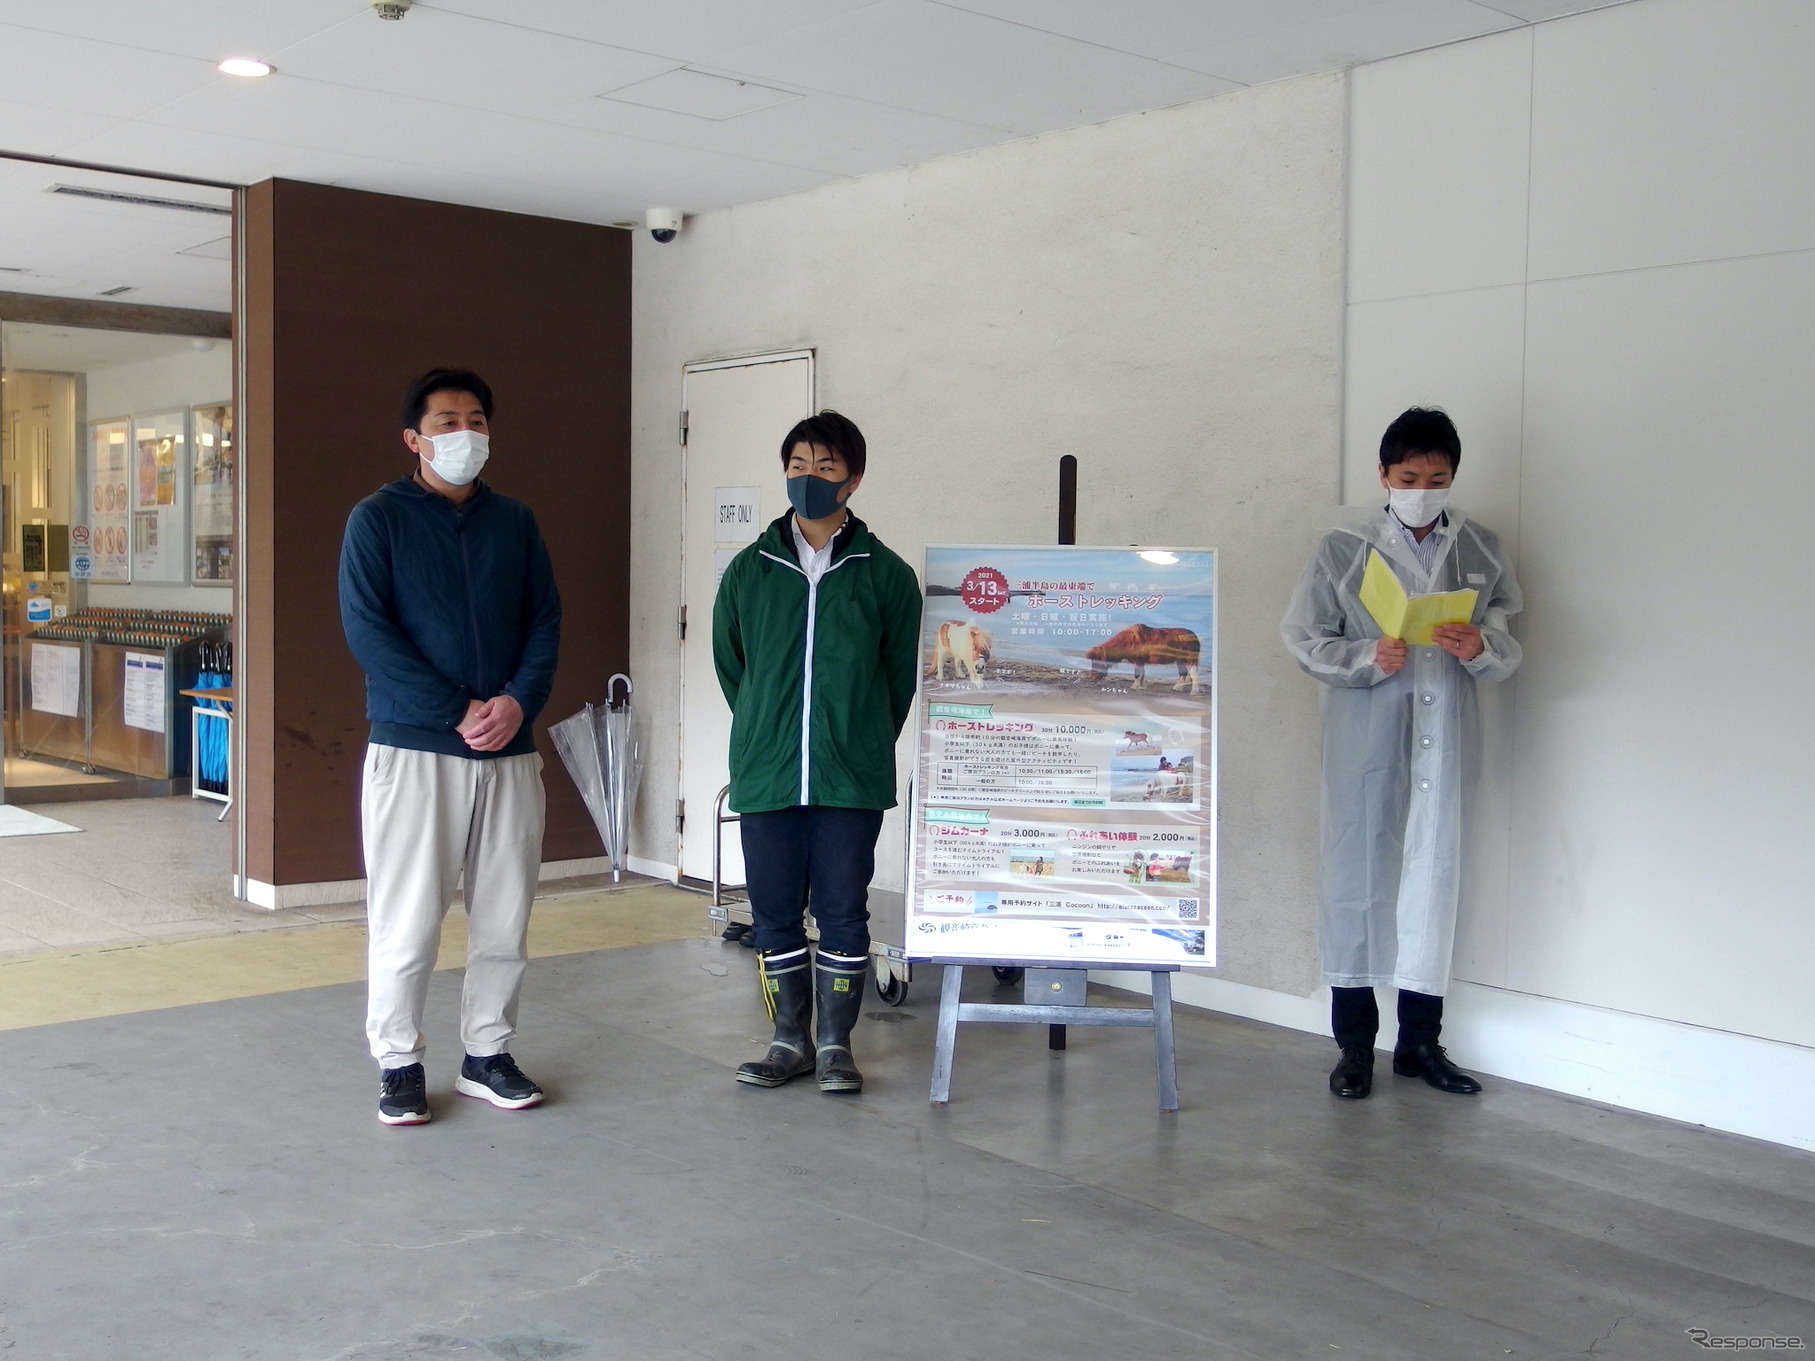 向かって左から観音崎京急ホテル営業部の佐藤次長、HTFの小柳CEO。